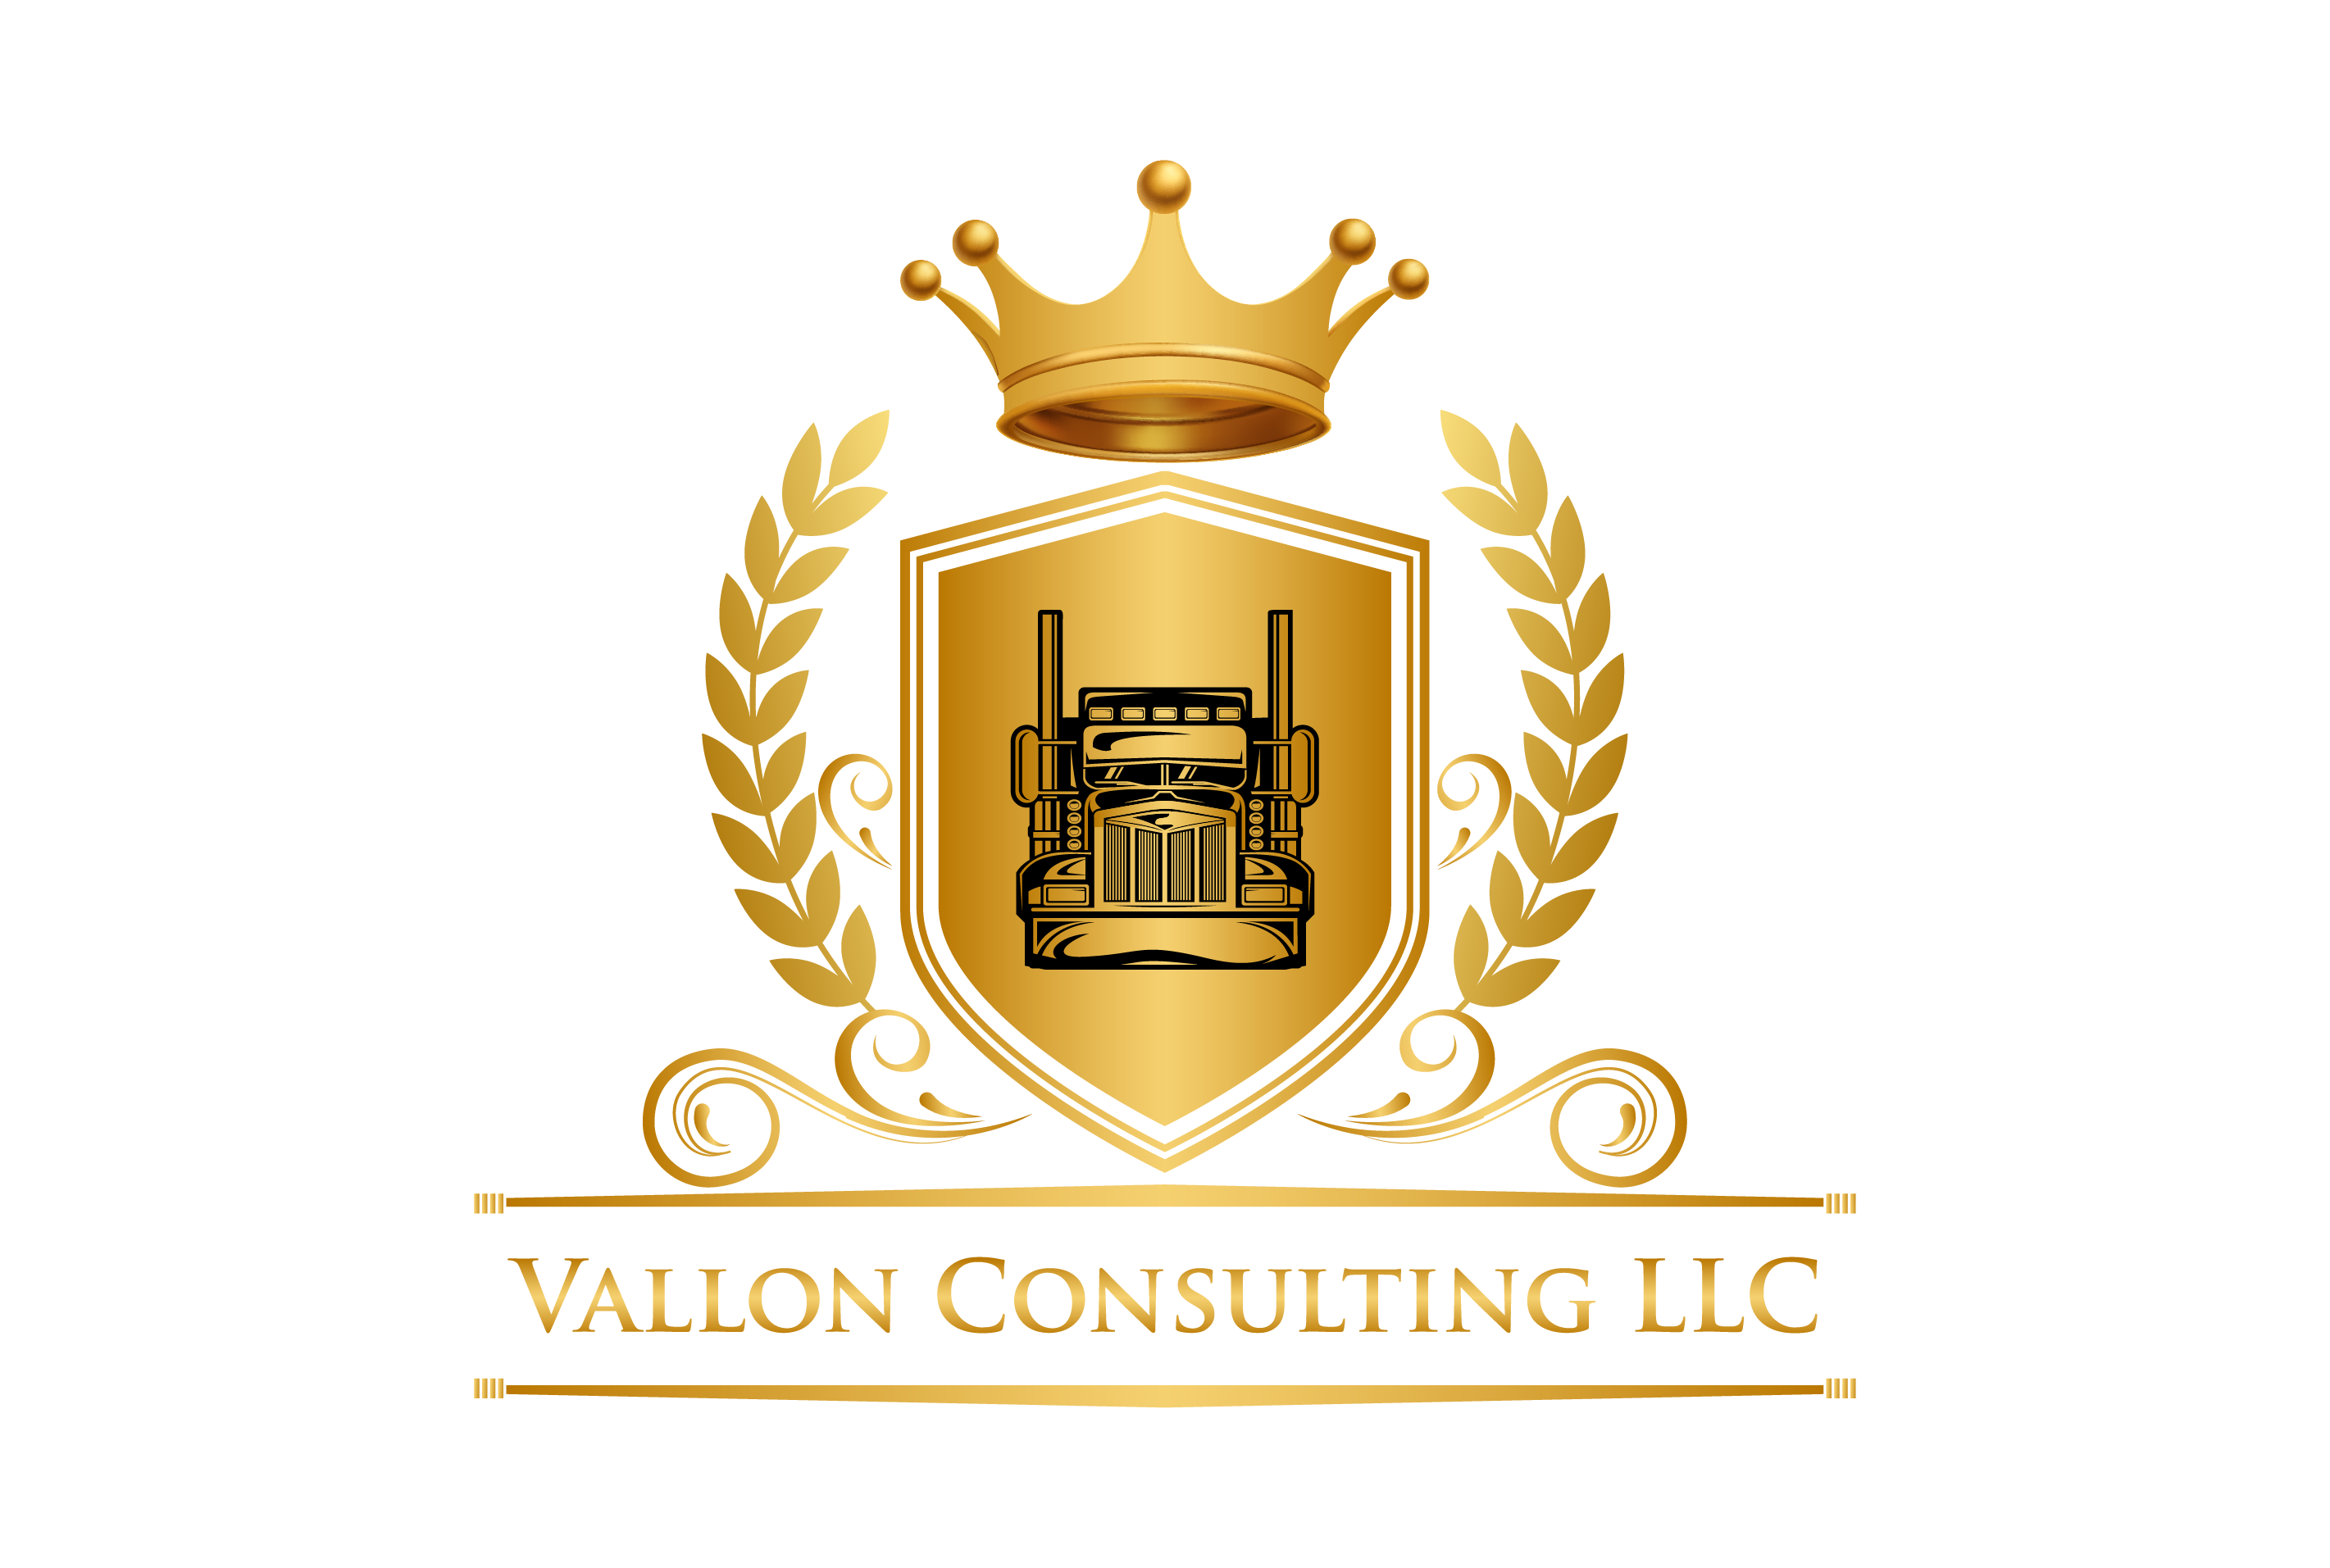 Vallon Consulting